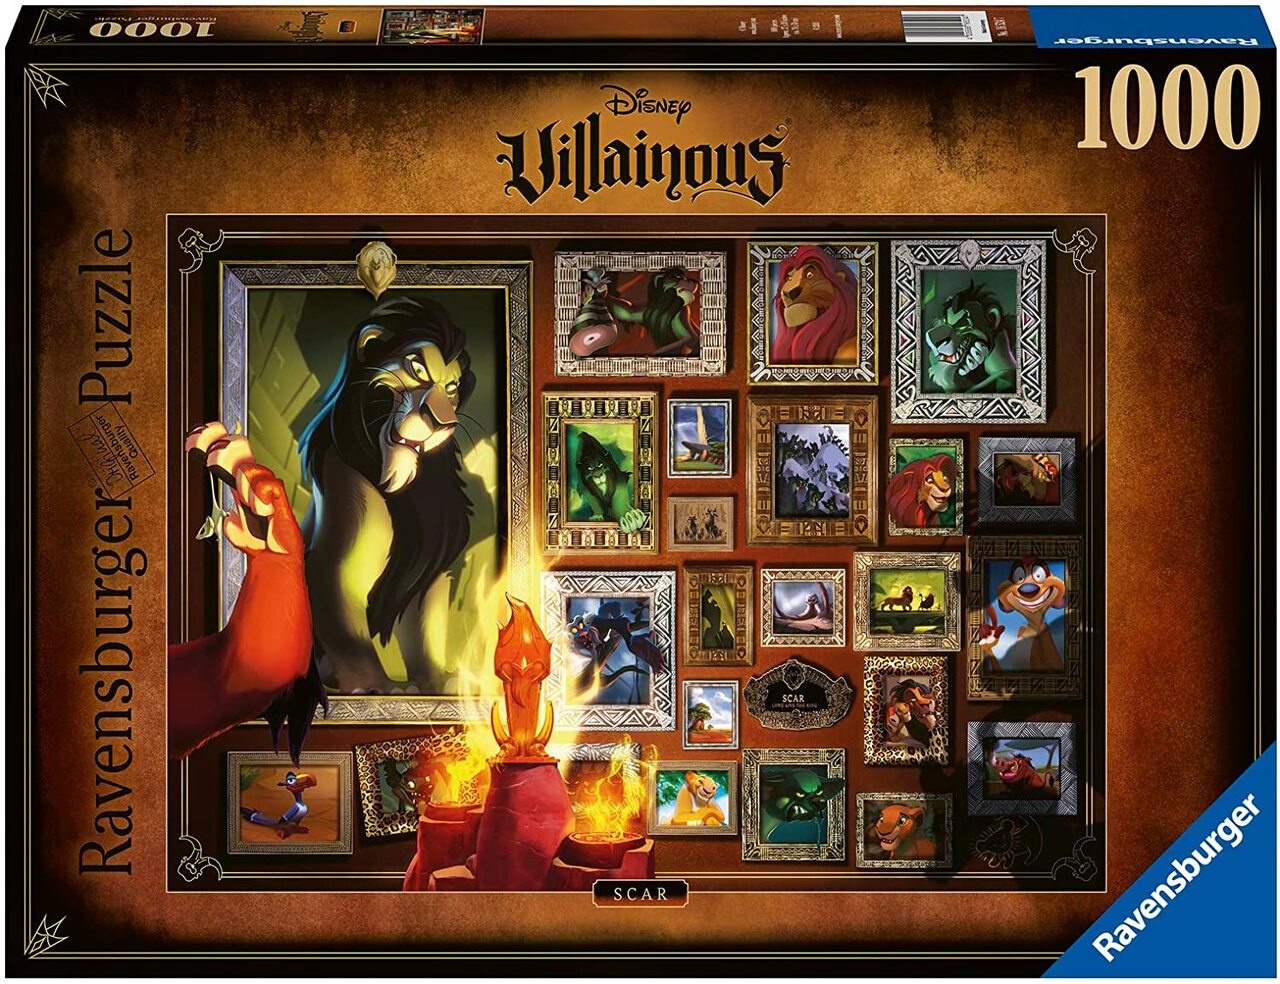 Disney Villainous - Scar (1000 pc puzzle)